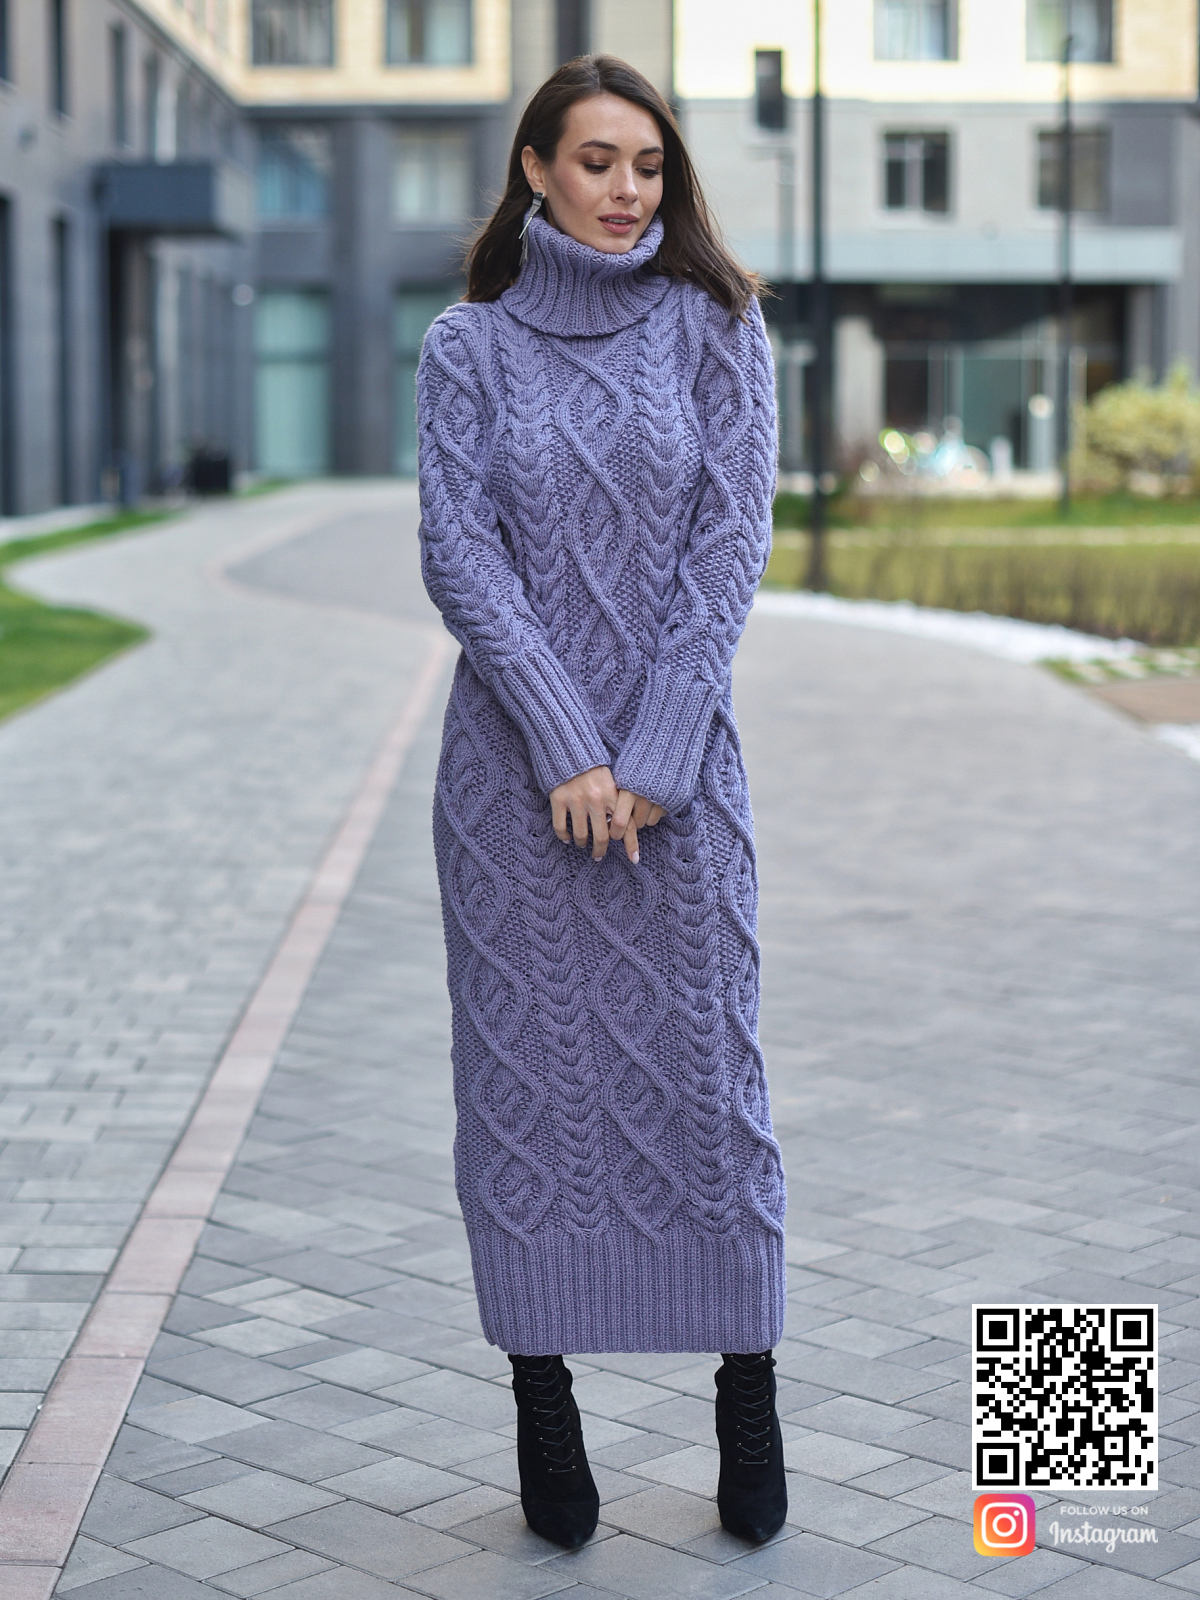 На третьей фотографии длинное сиреневое вязаное платье в интернет-магазине связанной одежды ручной работы Shapar.